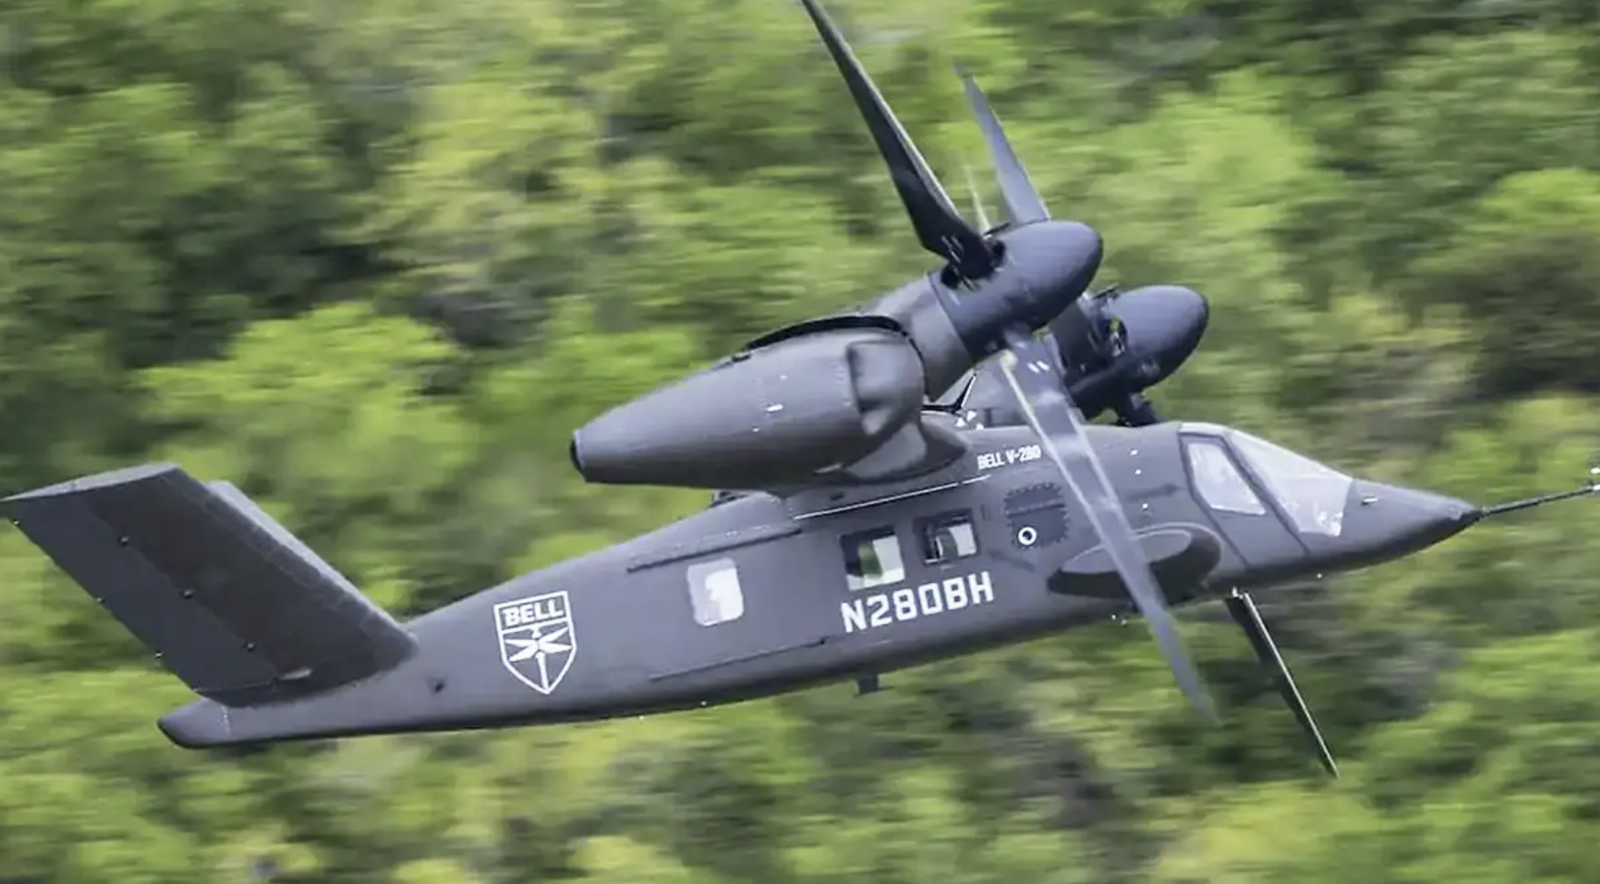 Trực thăng V-280 là một trong những phương tiện bay vô cùng tiên tiến và tin cậy. Xem hình ảnh về chiếc trực thăng này để cảm nhận được sự tuyệt vời của chuyến bay trong không trung.